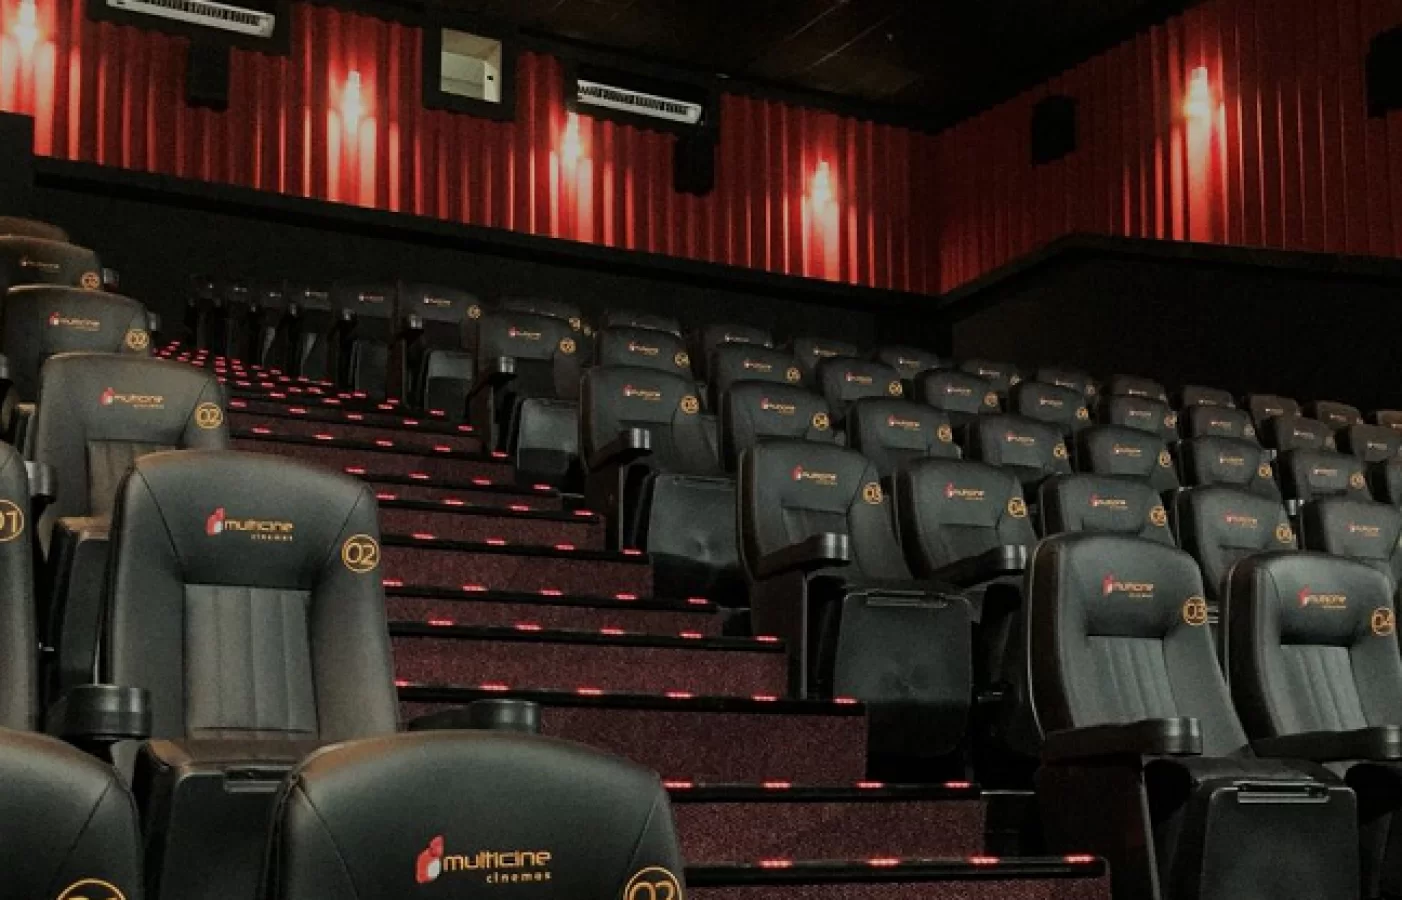 Está chegando um novo cinema em Mossoró